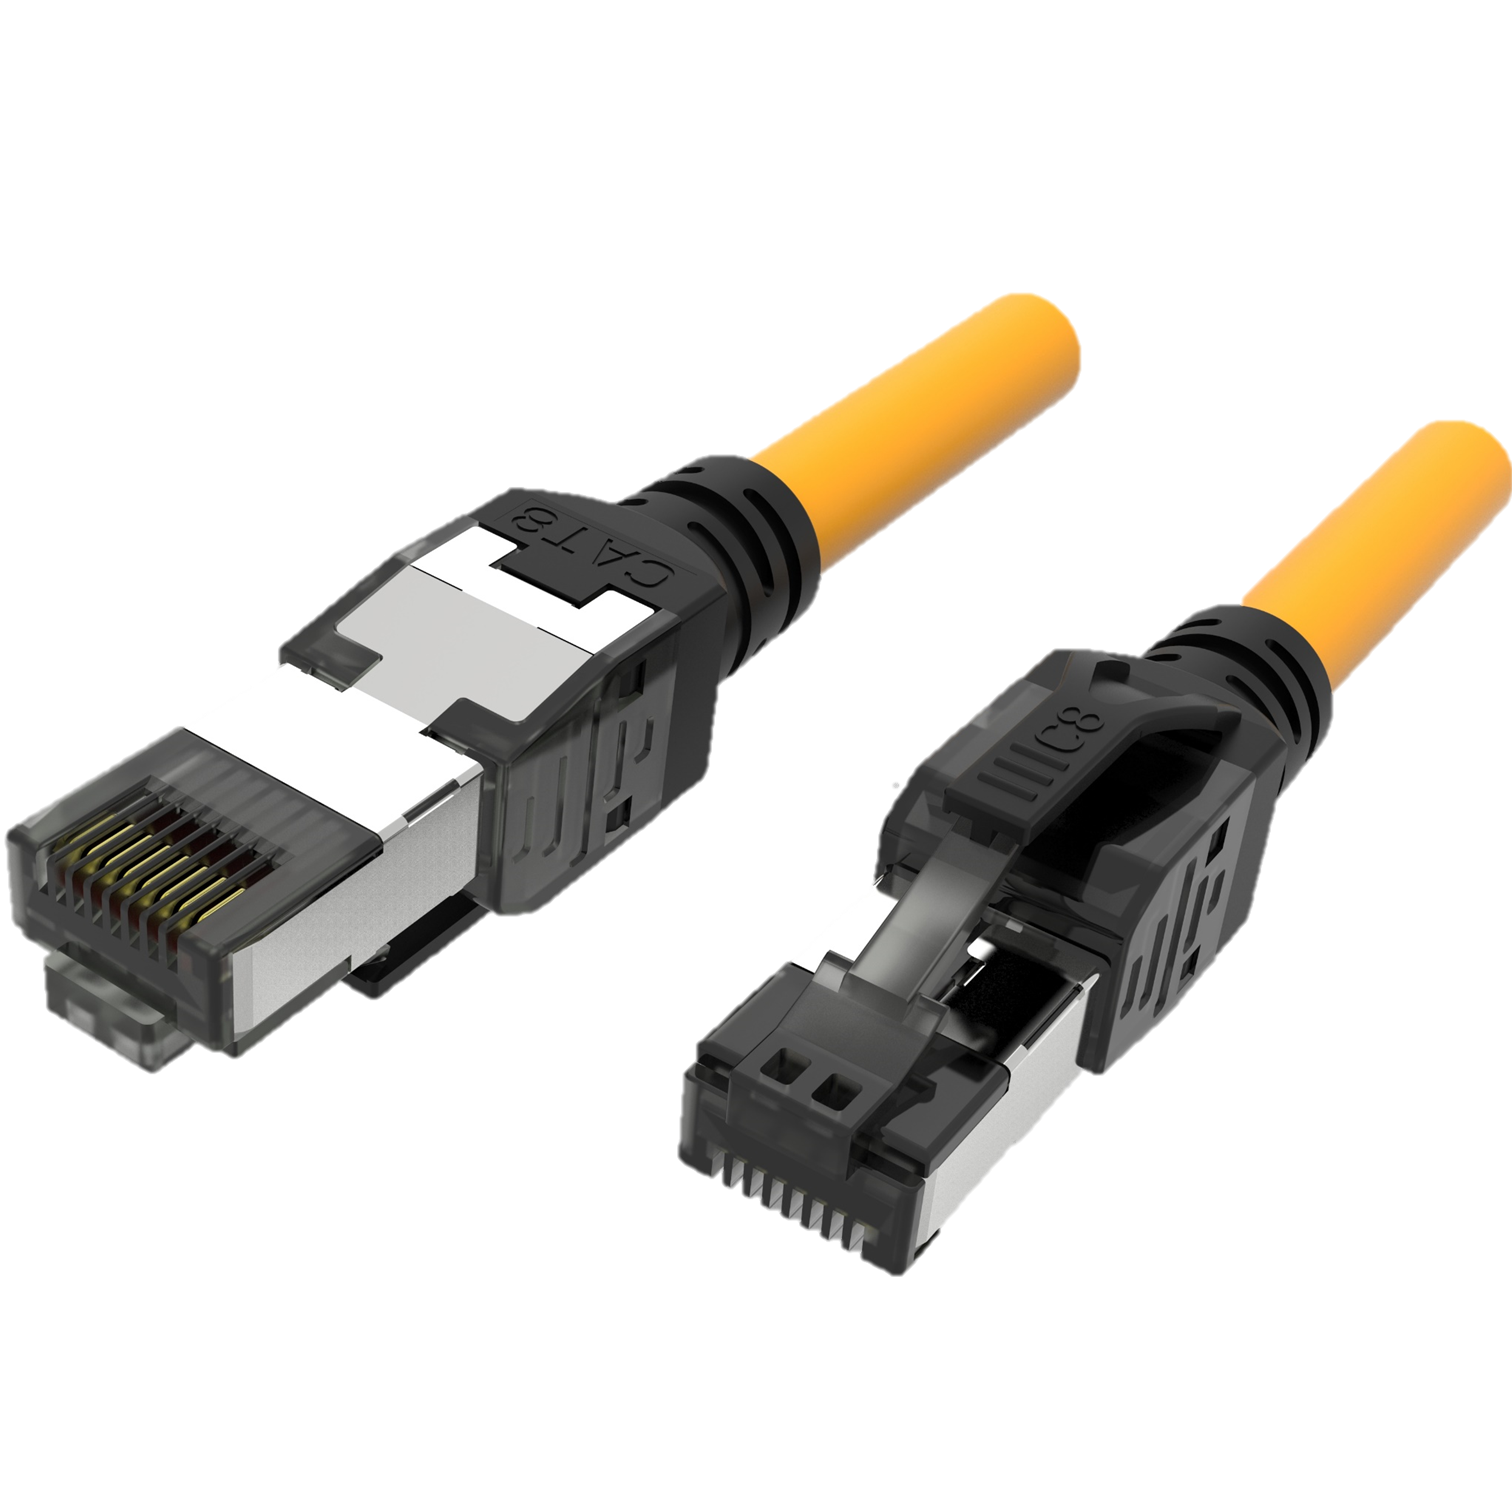 Cable de conexión ensamblado Cat.8 S/FTP de 24 AWG, Soluciones avanzadas  de enchufe modular para aplicaciones críticas de red